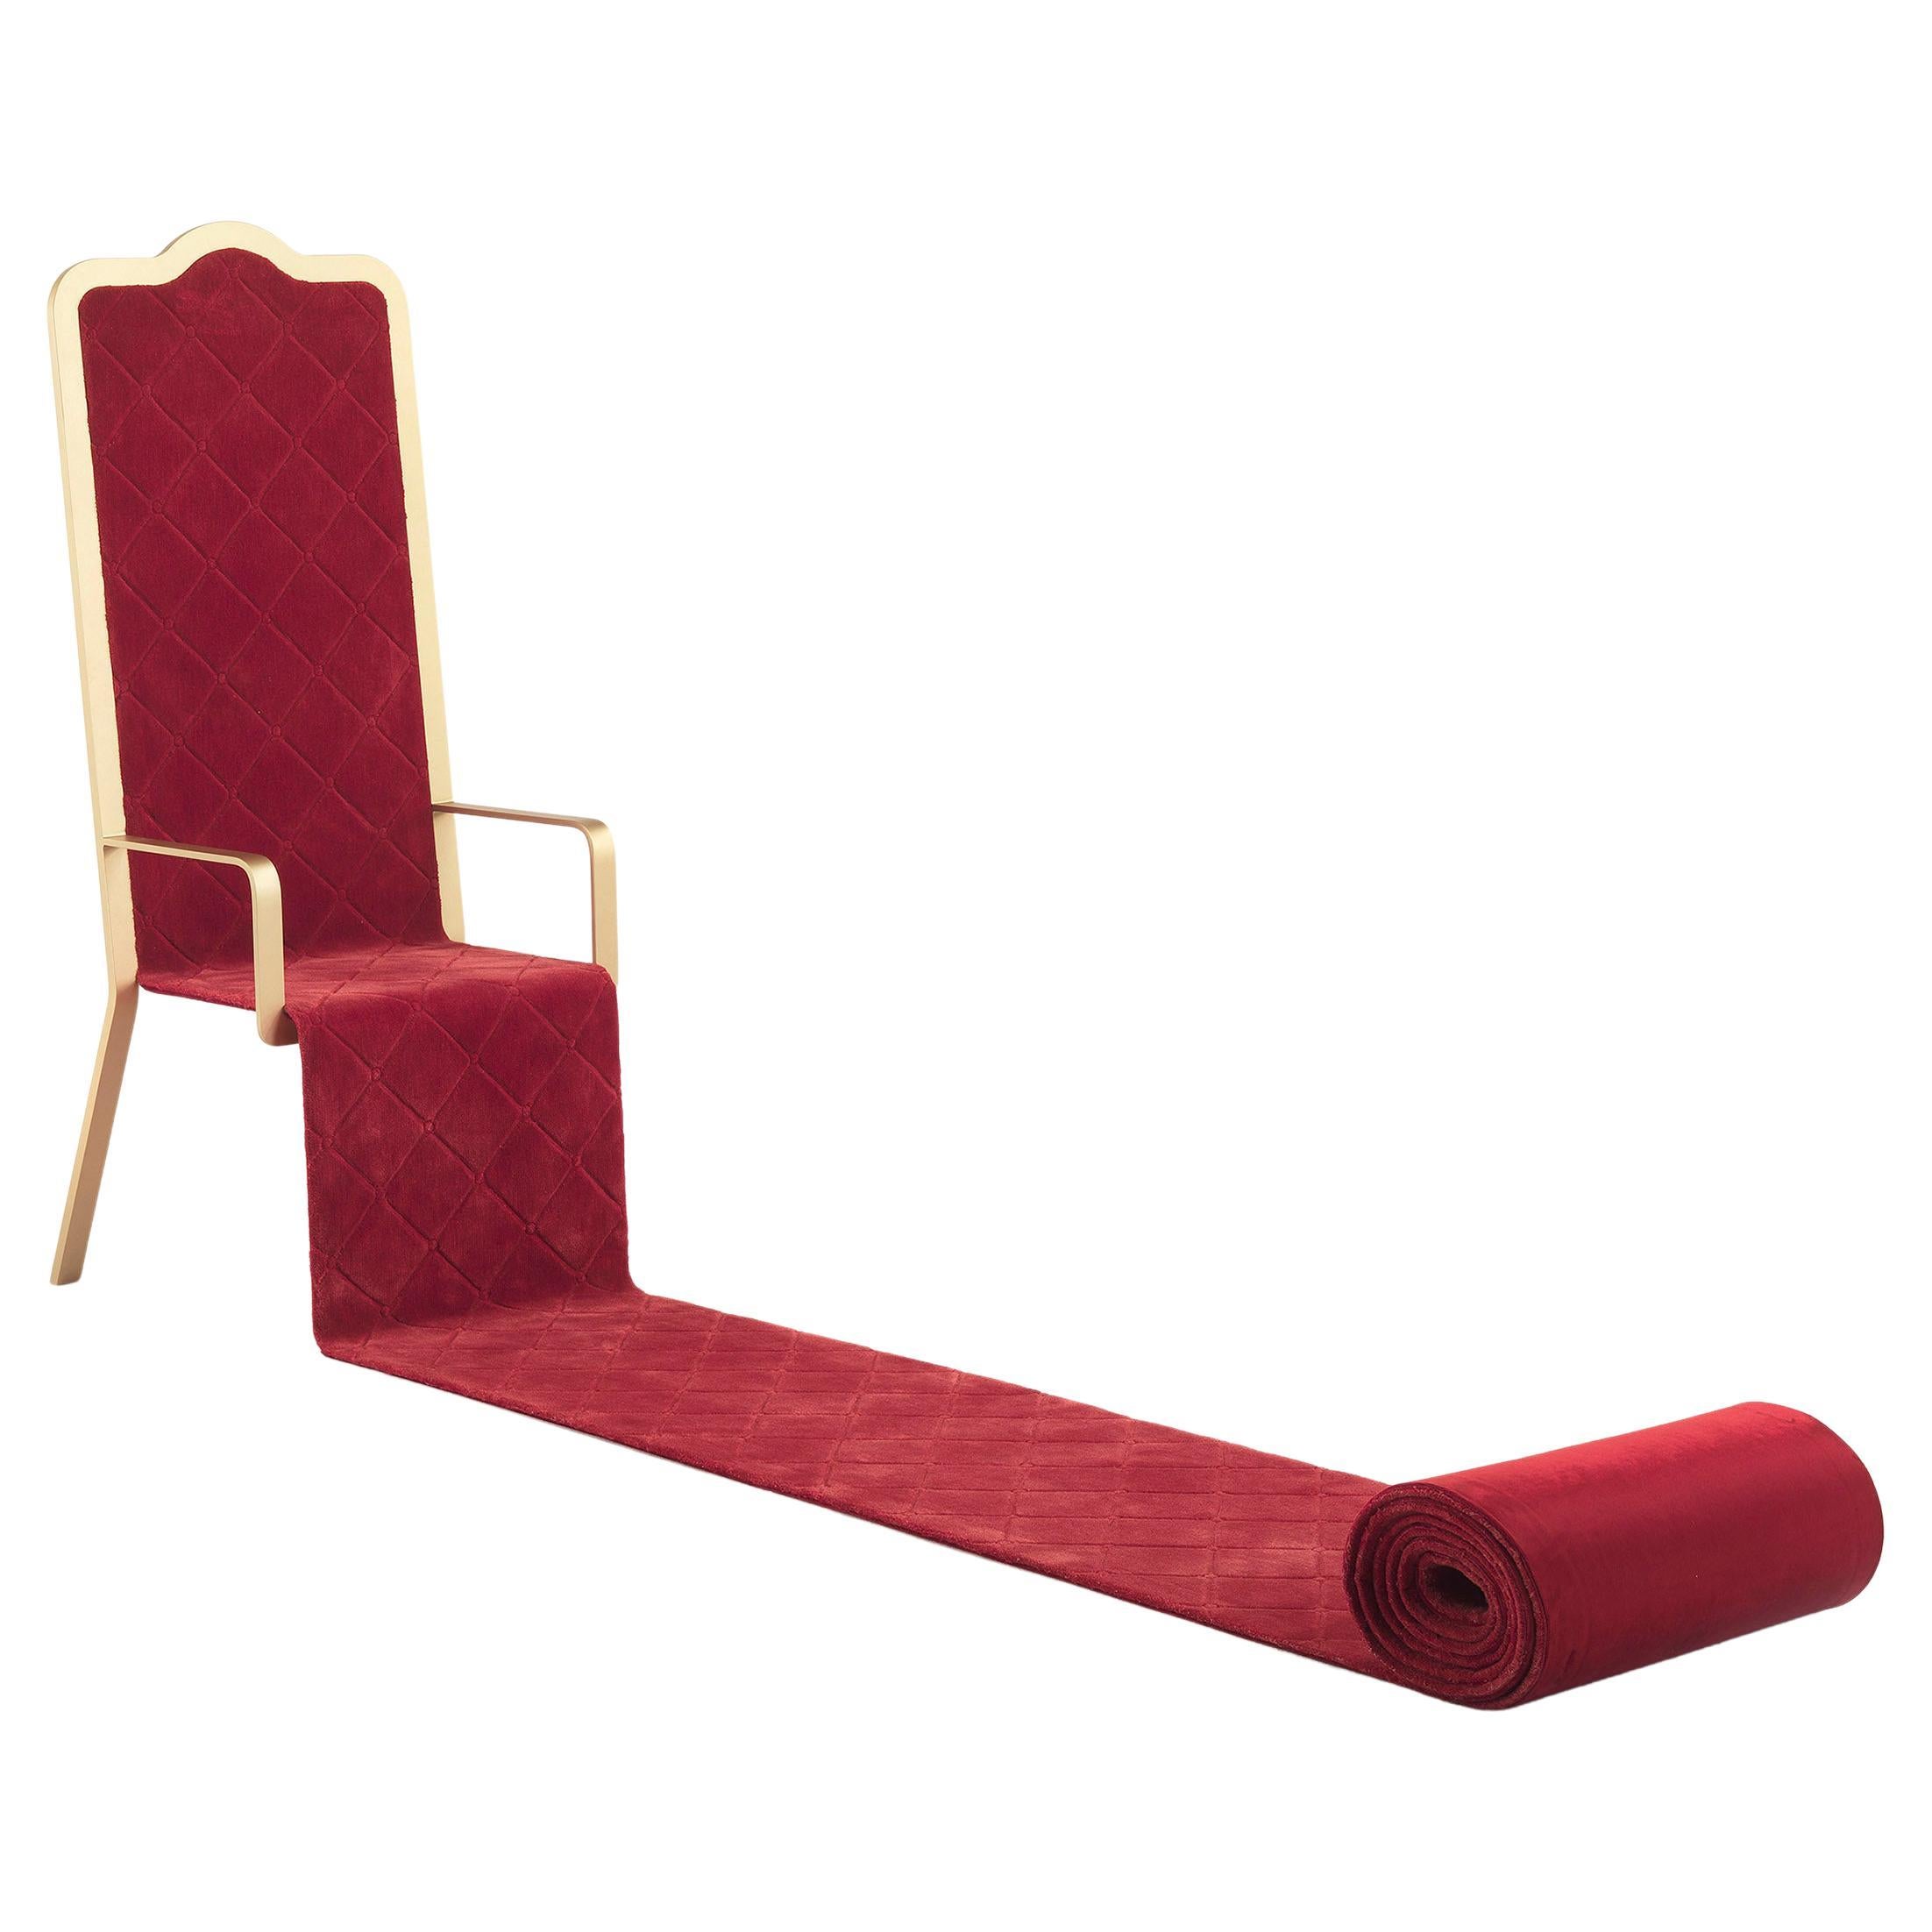 Throne Osforth du 21e siècle en velours rouge d'Emanuele Magini - Édition limitée